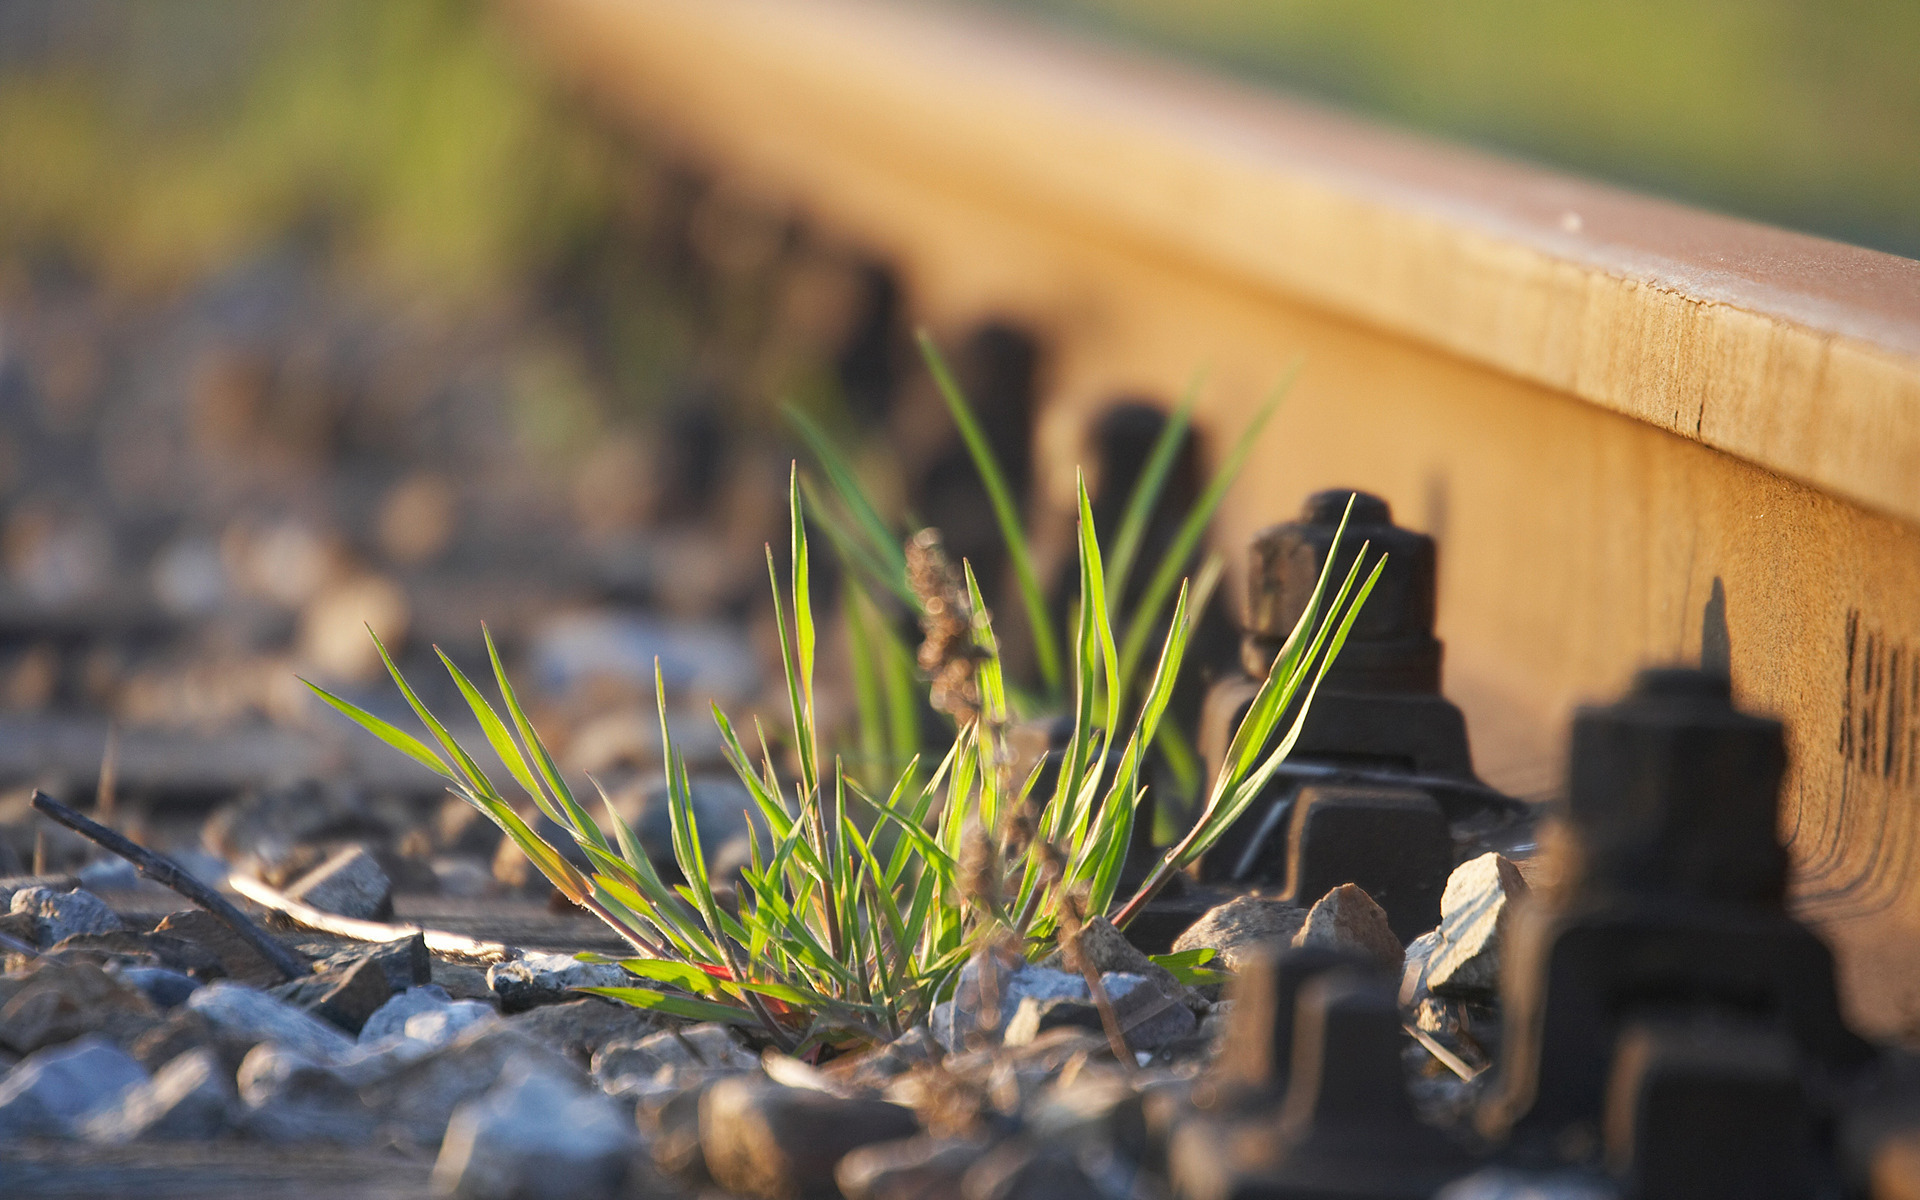 Растения на железной дороге скачать